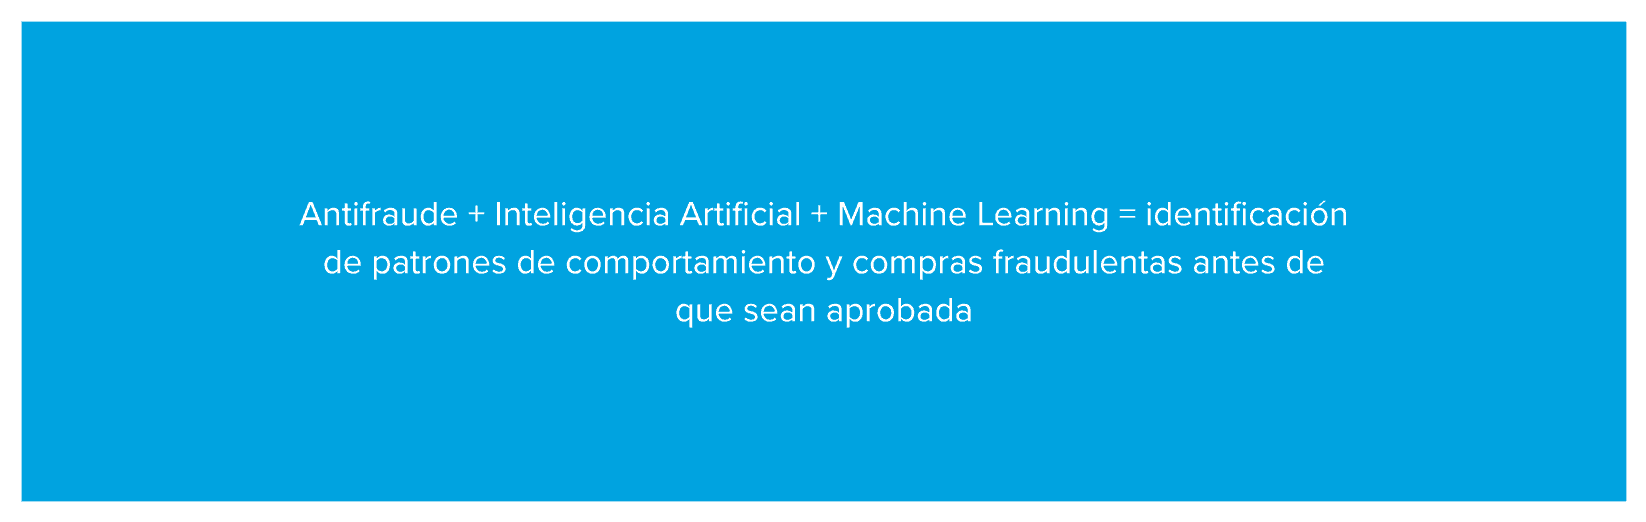 Antifraude + Inteligencia Artificial + Machine Learning = identificación de patrones de comportamiento y compras fraudulentas antes de que sean aprobadas
